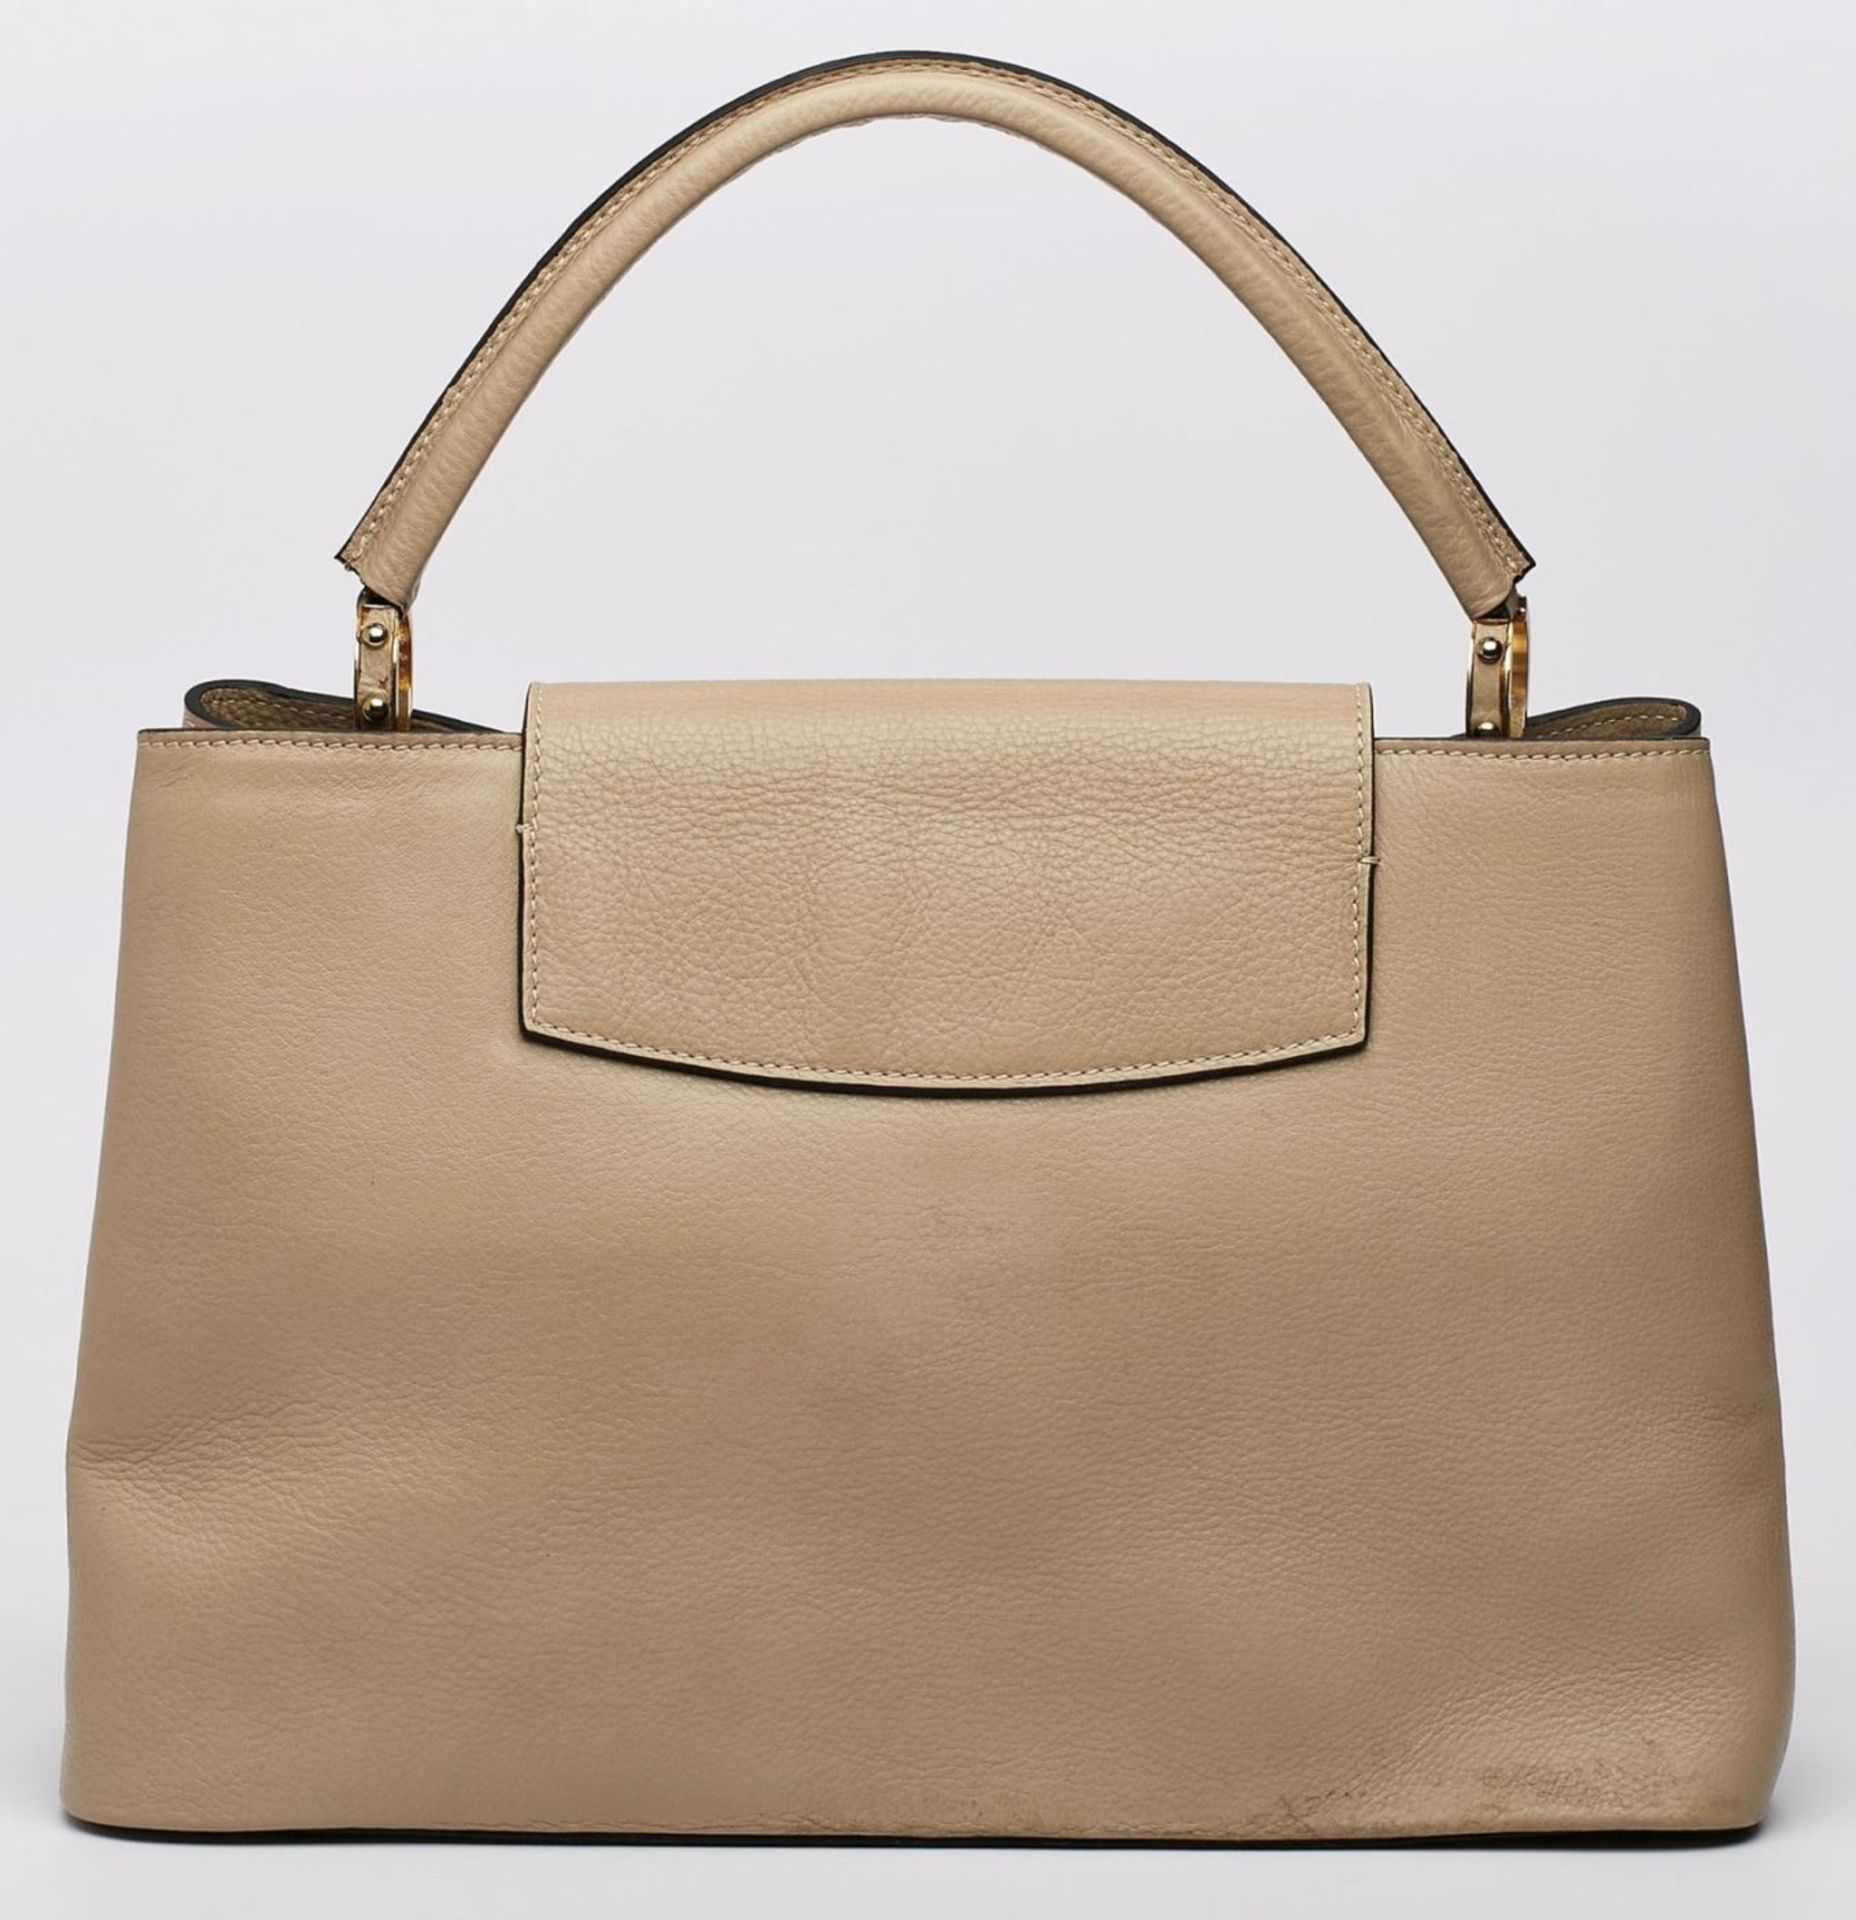 Handtasche "Capucines", Louis Vuitton wohl um 2015. - Image 3 of 4